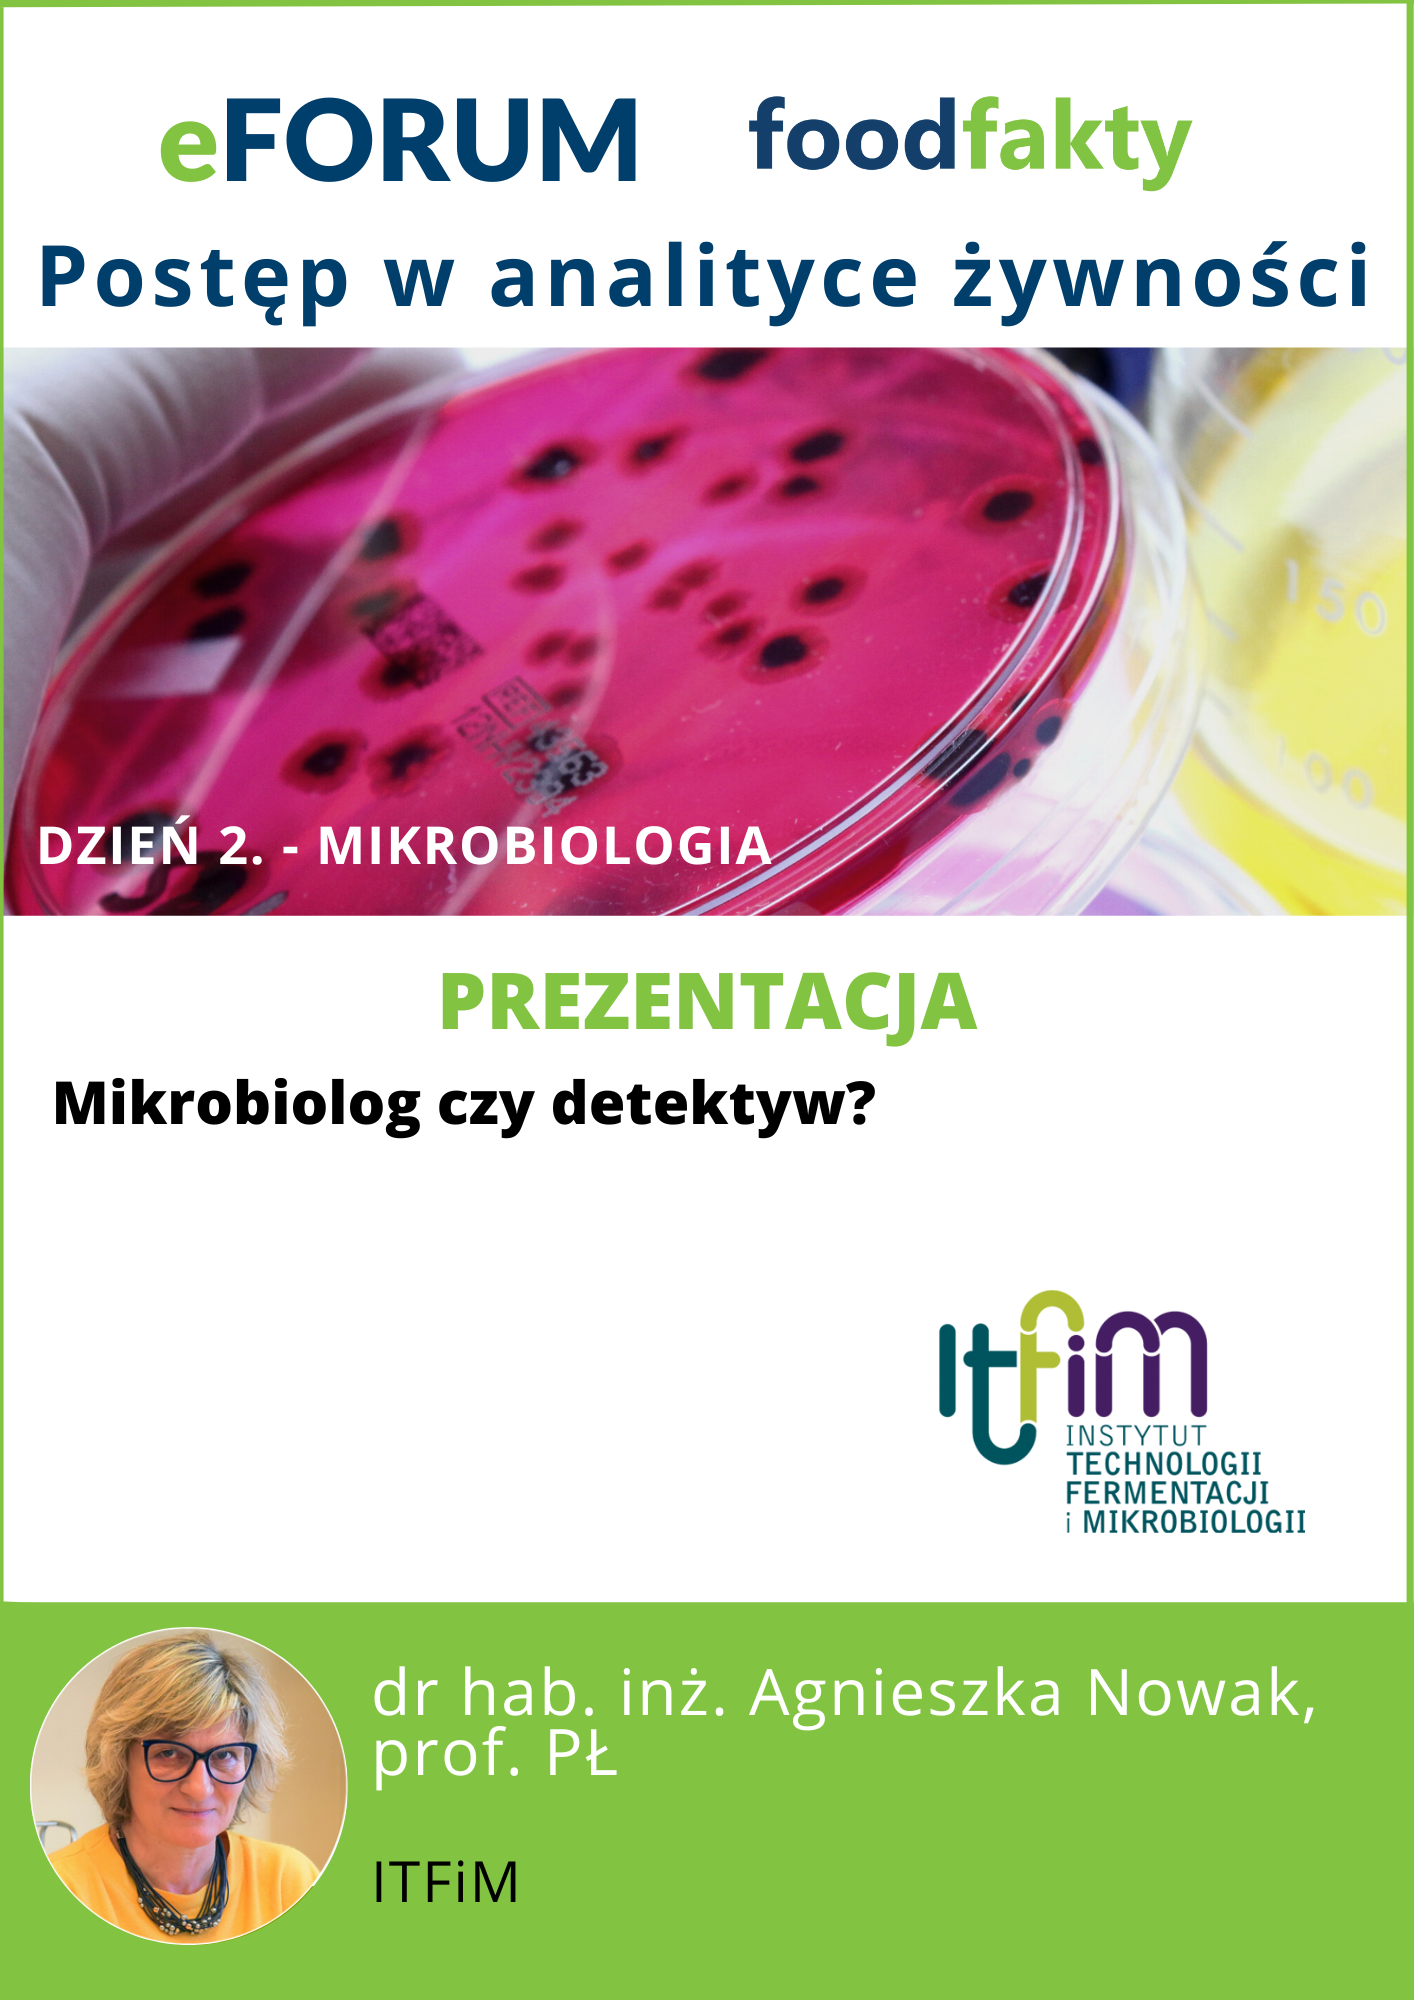 eFORUM Postęp w analityce żywności. Dzień 2. - Mikrobiologia - ITFiM